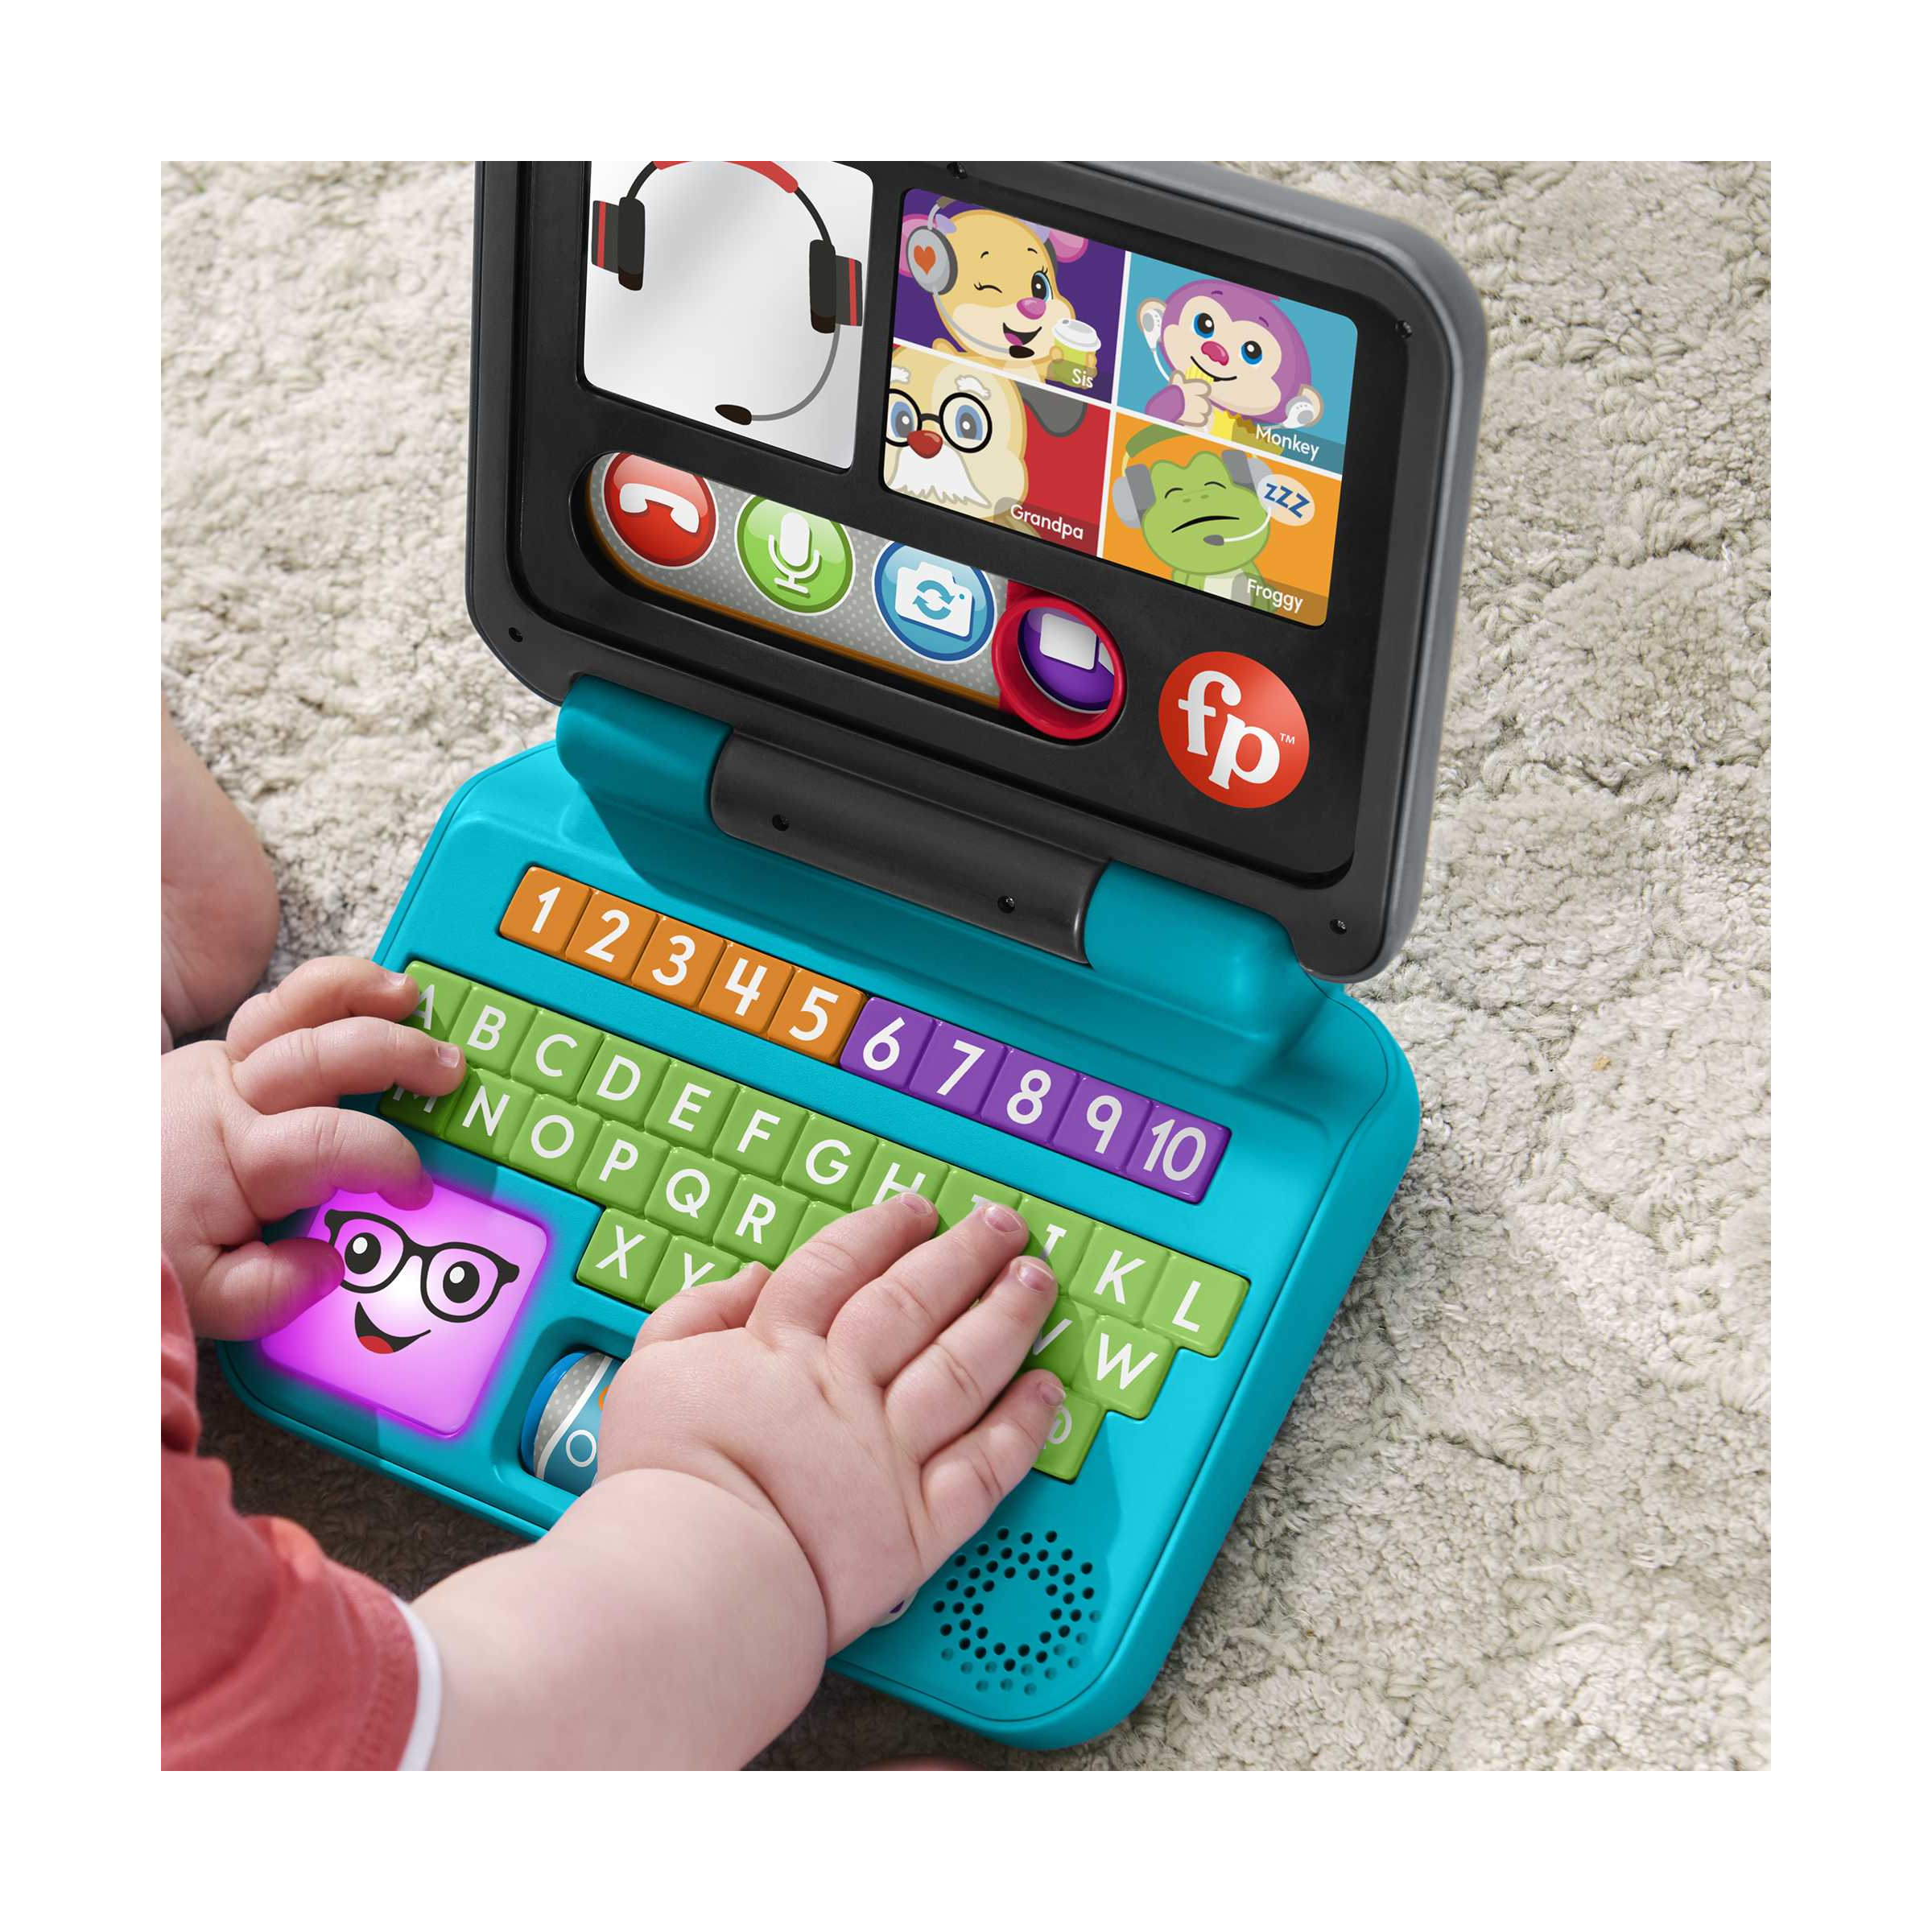 fisher-price - ridi e impara il mio primo laptop, edizione italiana,  giocattolo elettronico con contenuti educativi smart stages, giocattolo per  bambini 6+ mesi, hhh03 - Toys Center